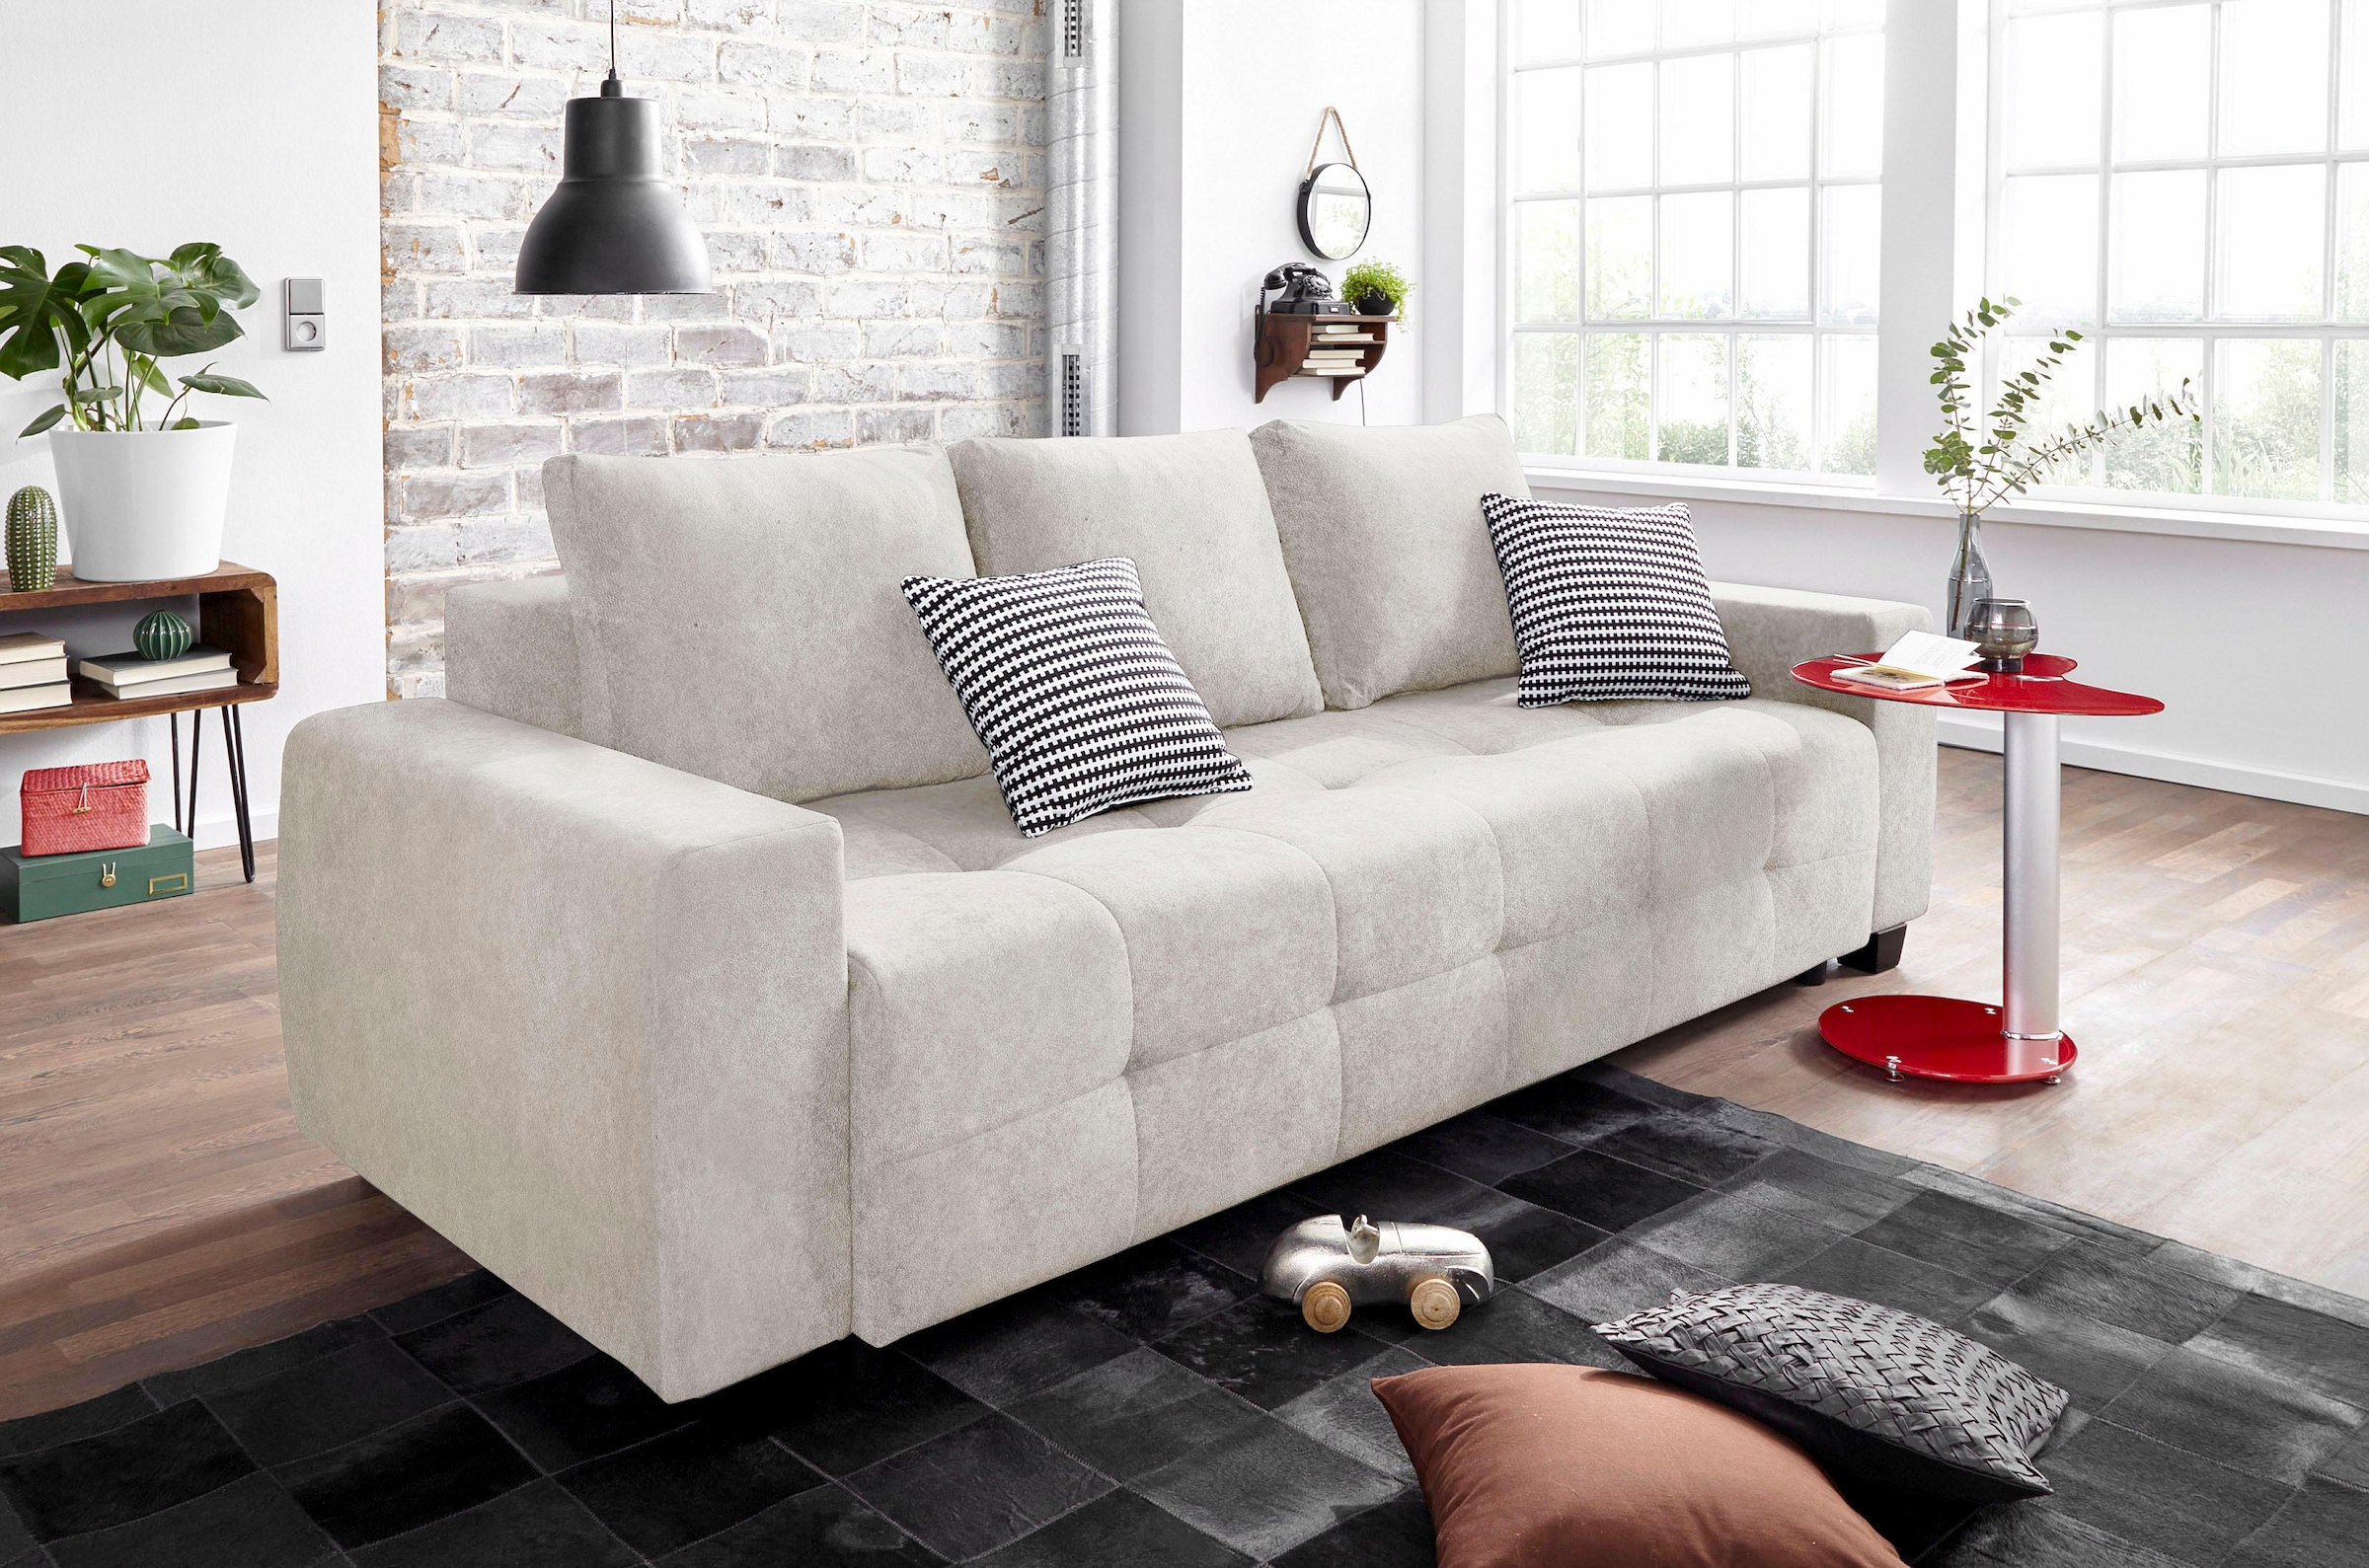 Sofa kaufen  Couch & Sofa auf Raten bei Quelle bestellen